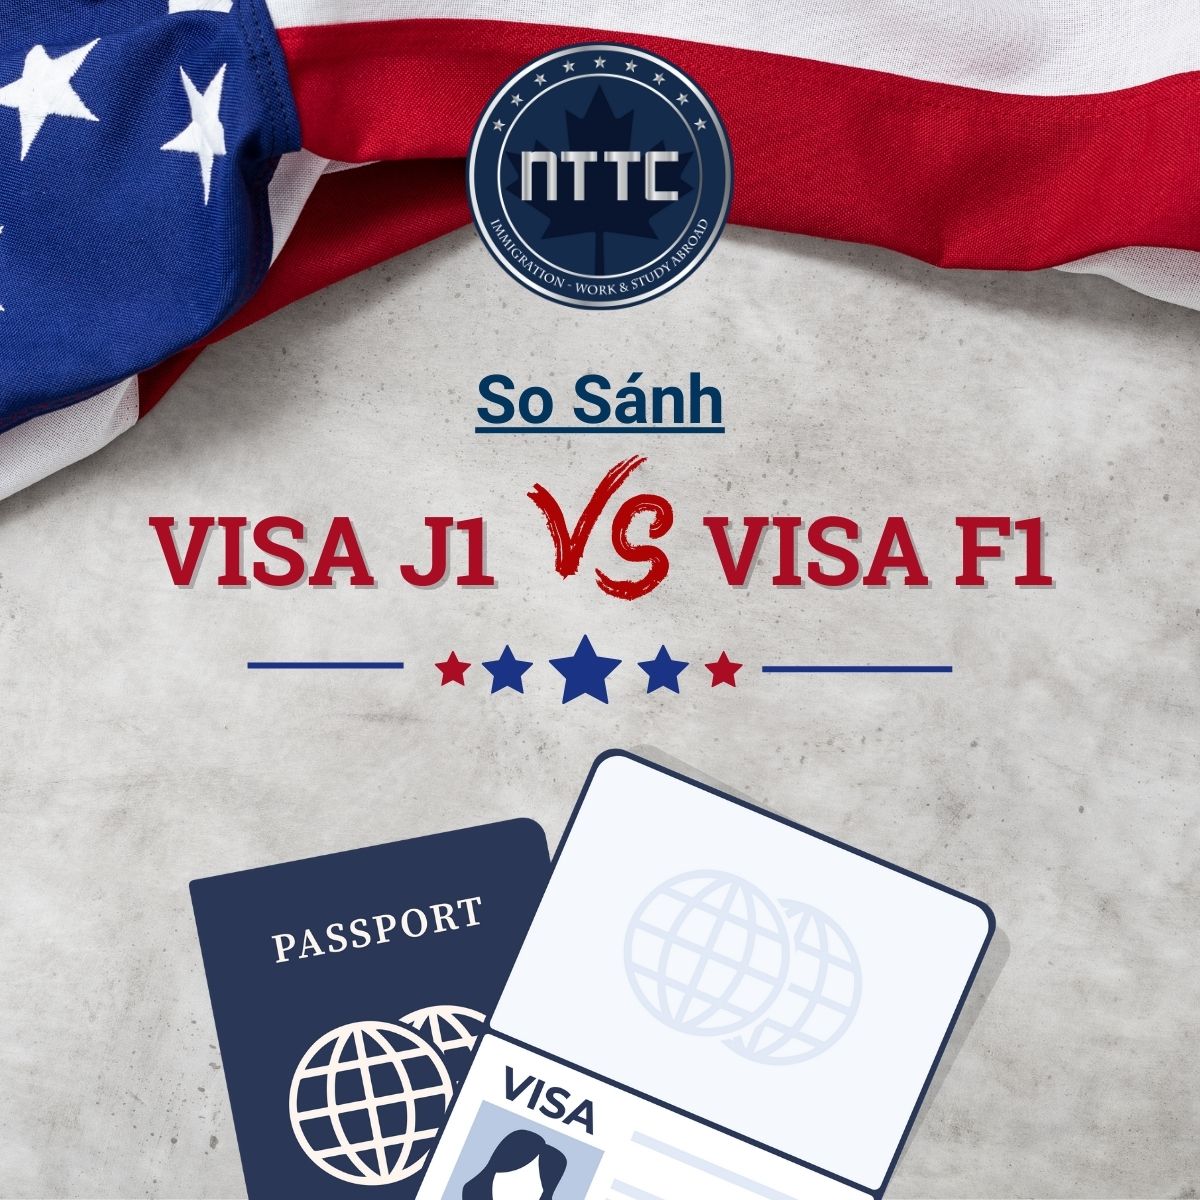 So sánh visa J1 và visa F1: Sự khác biệt cơ bản?